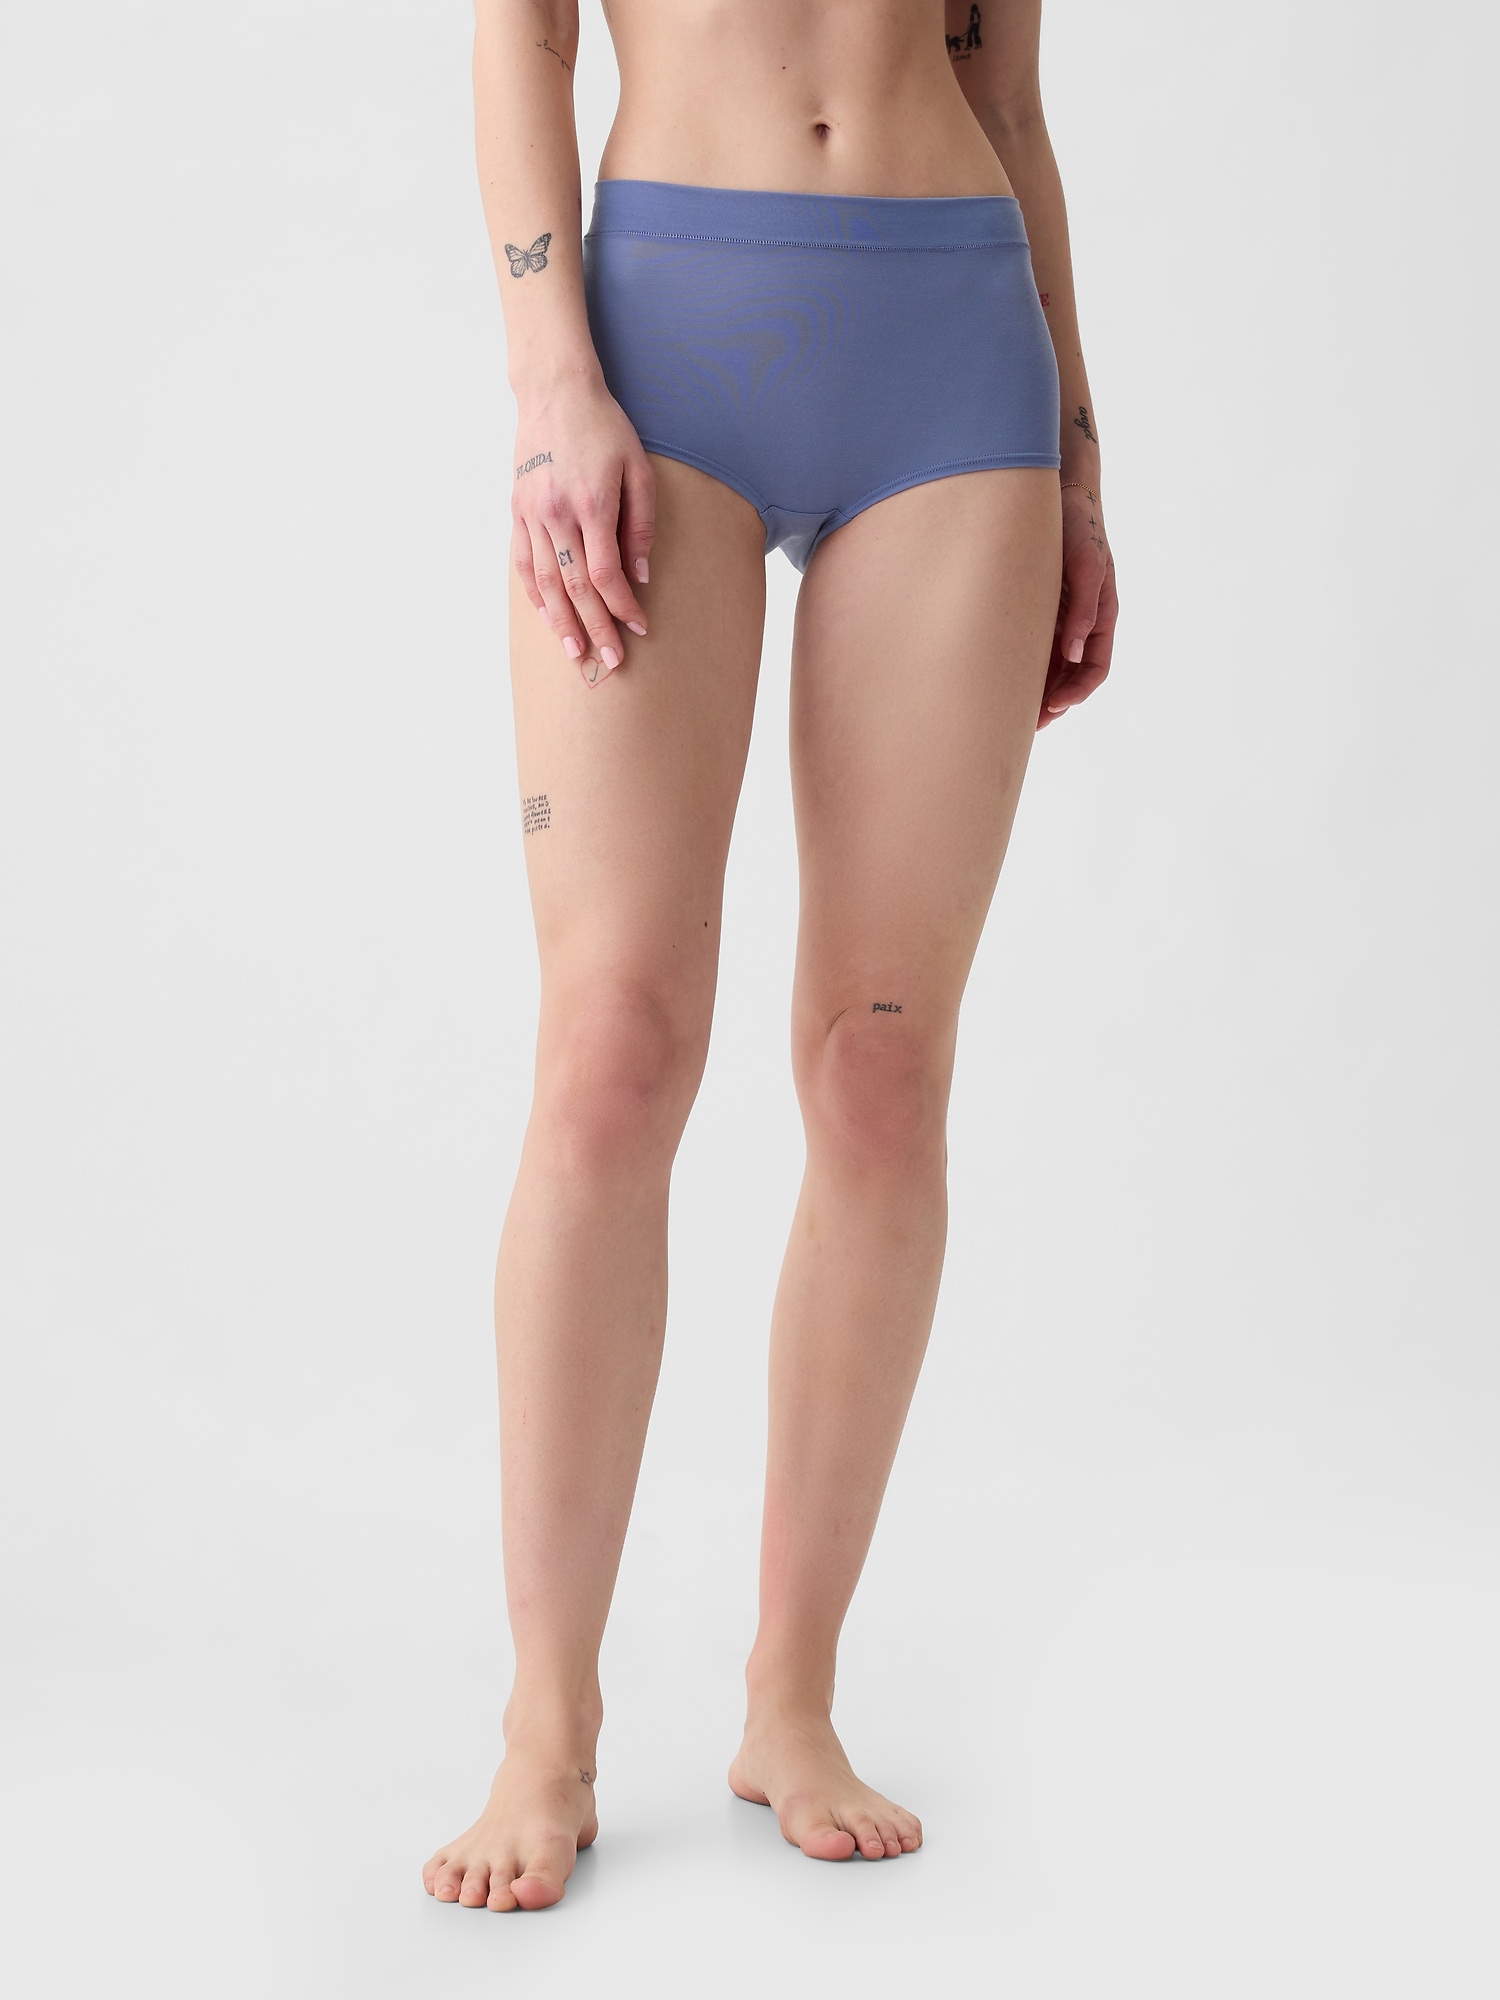 Buy Gap No-Show Bikini from the Gap online shop